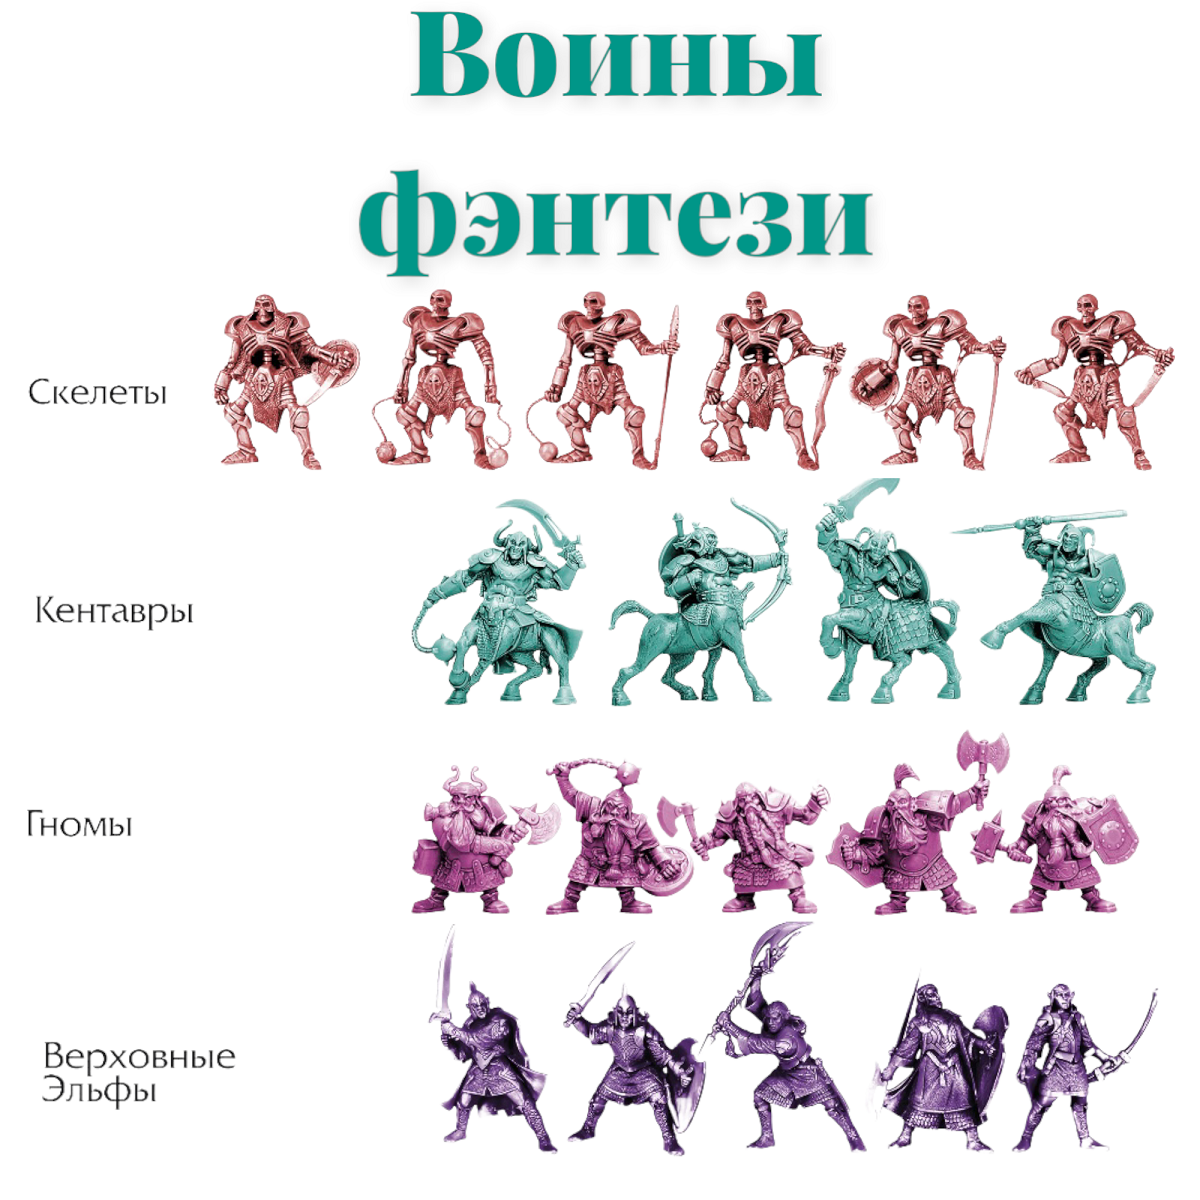 Игровой набор солдатиков Парам-пампам Воины фэнтези 8 видов армий - фото 3